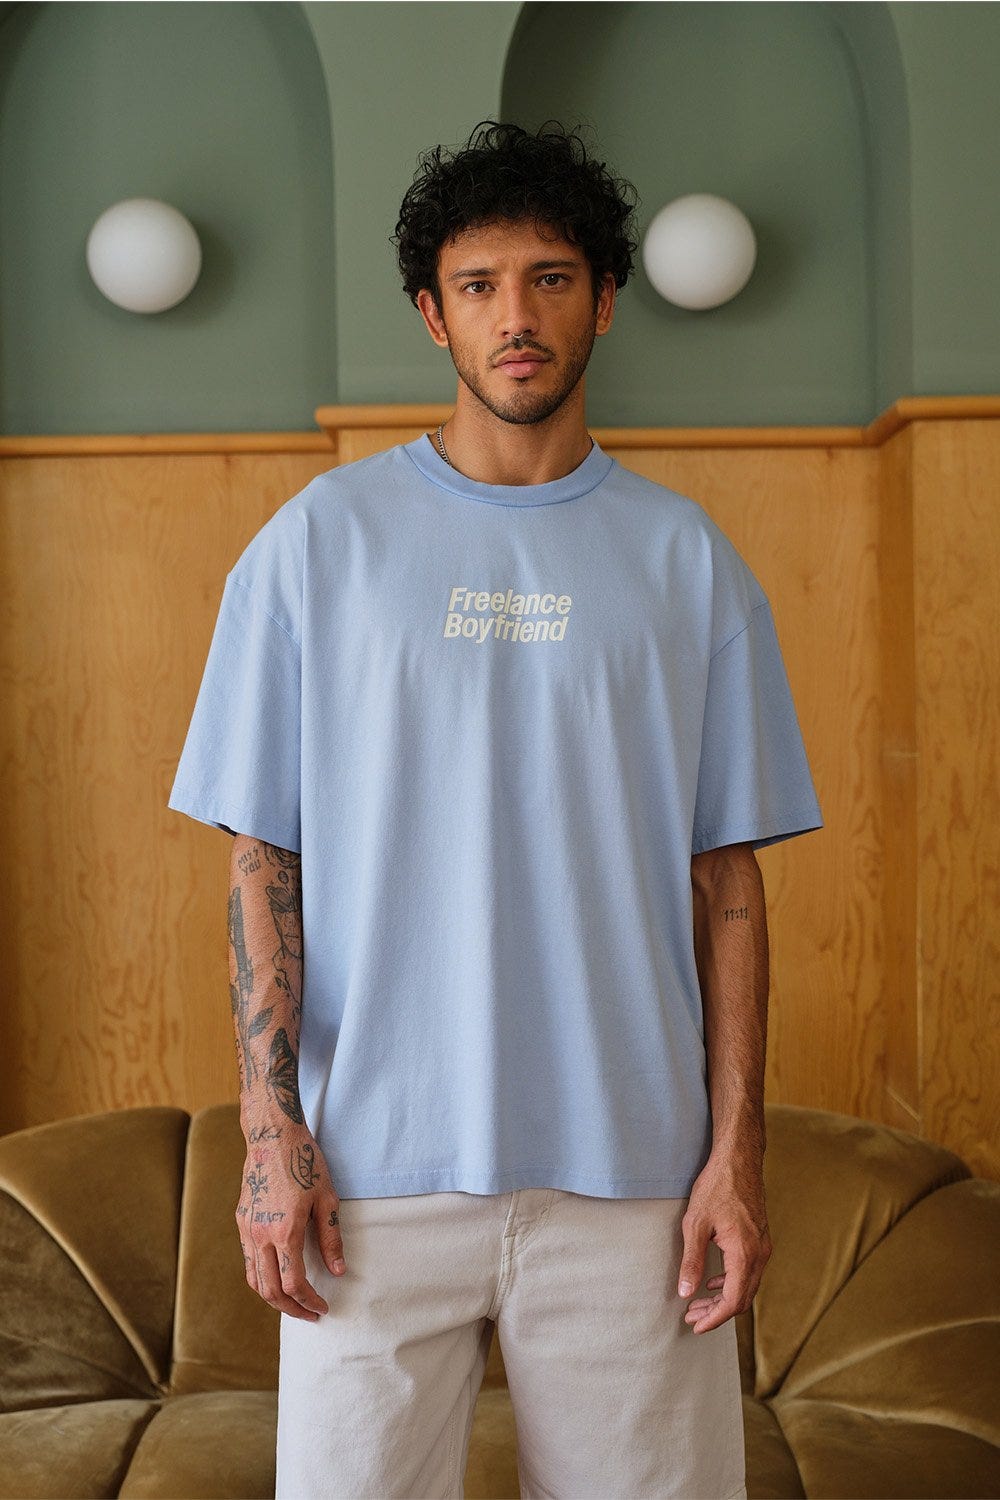 A male model posing in a Blue Freelance Boyfriend Oversized T-shirt with ‘freelance boyfriend’ written on it.